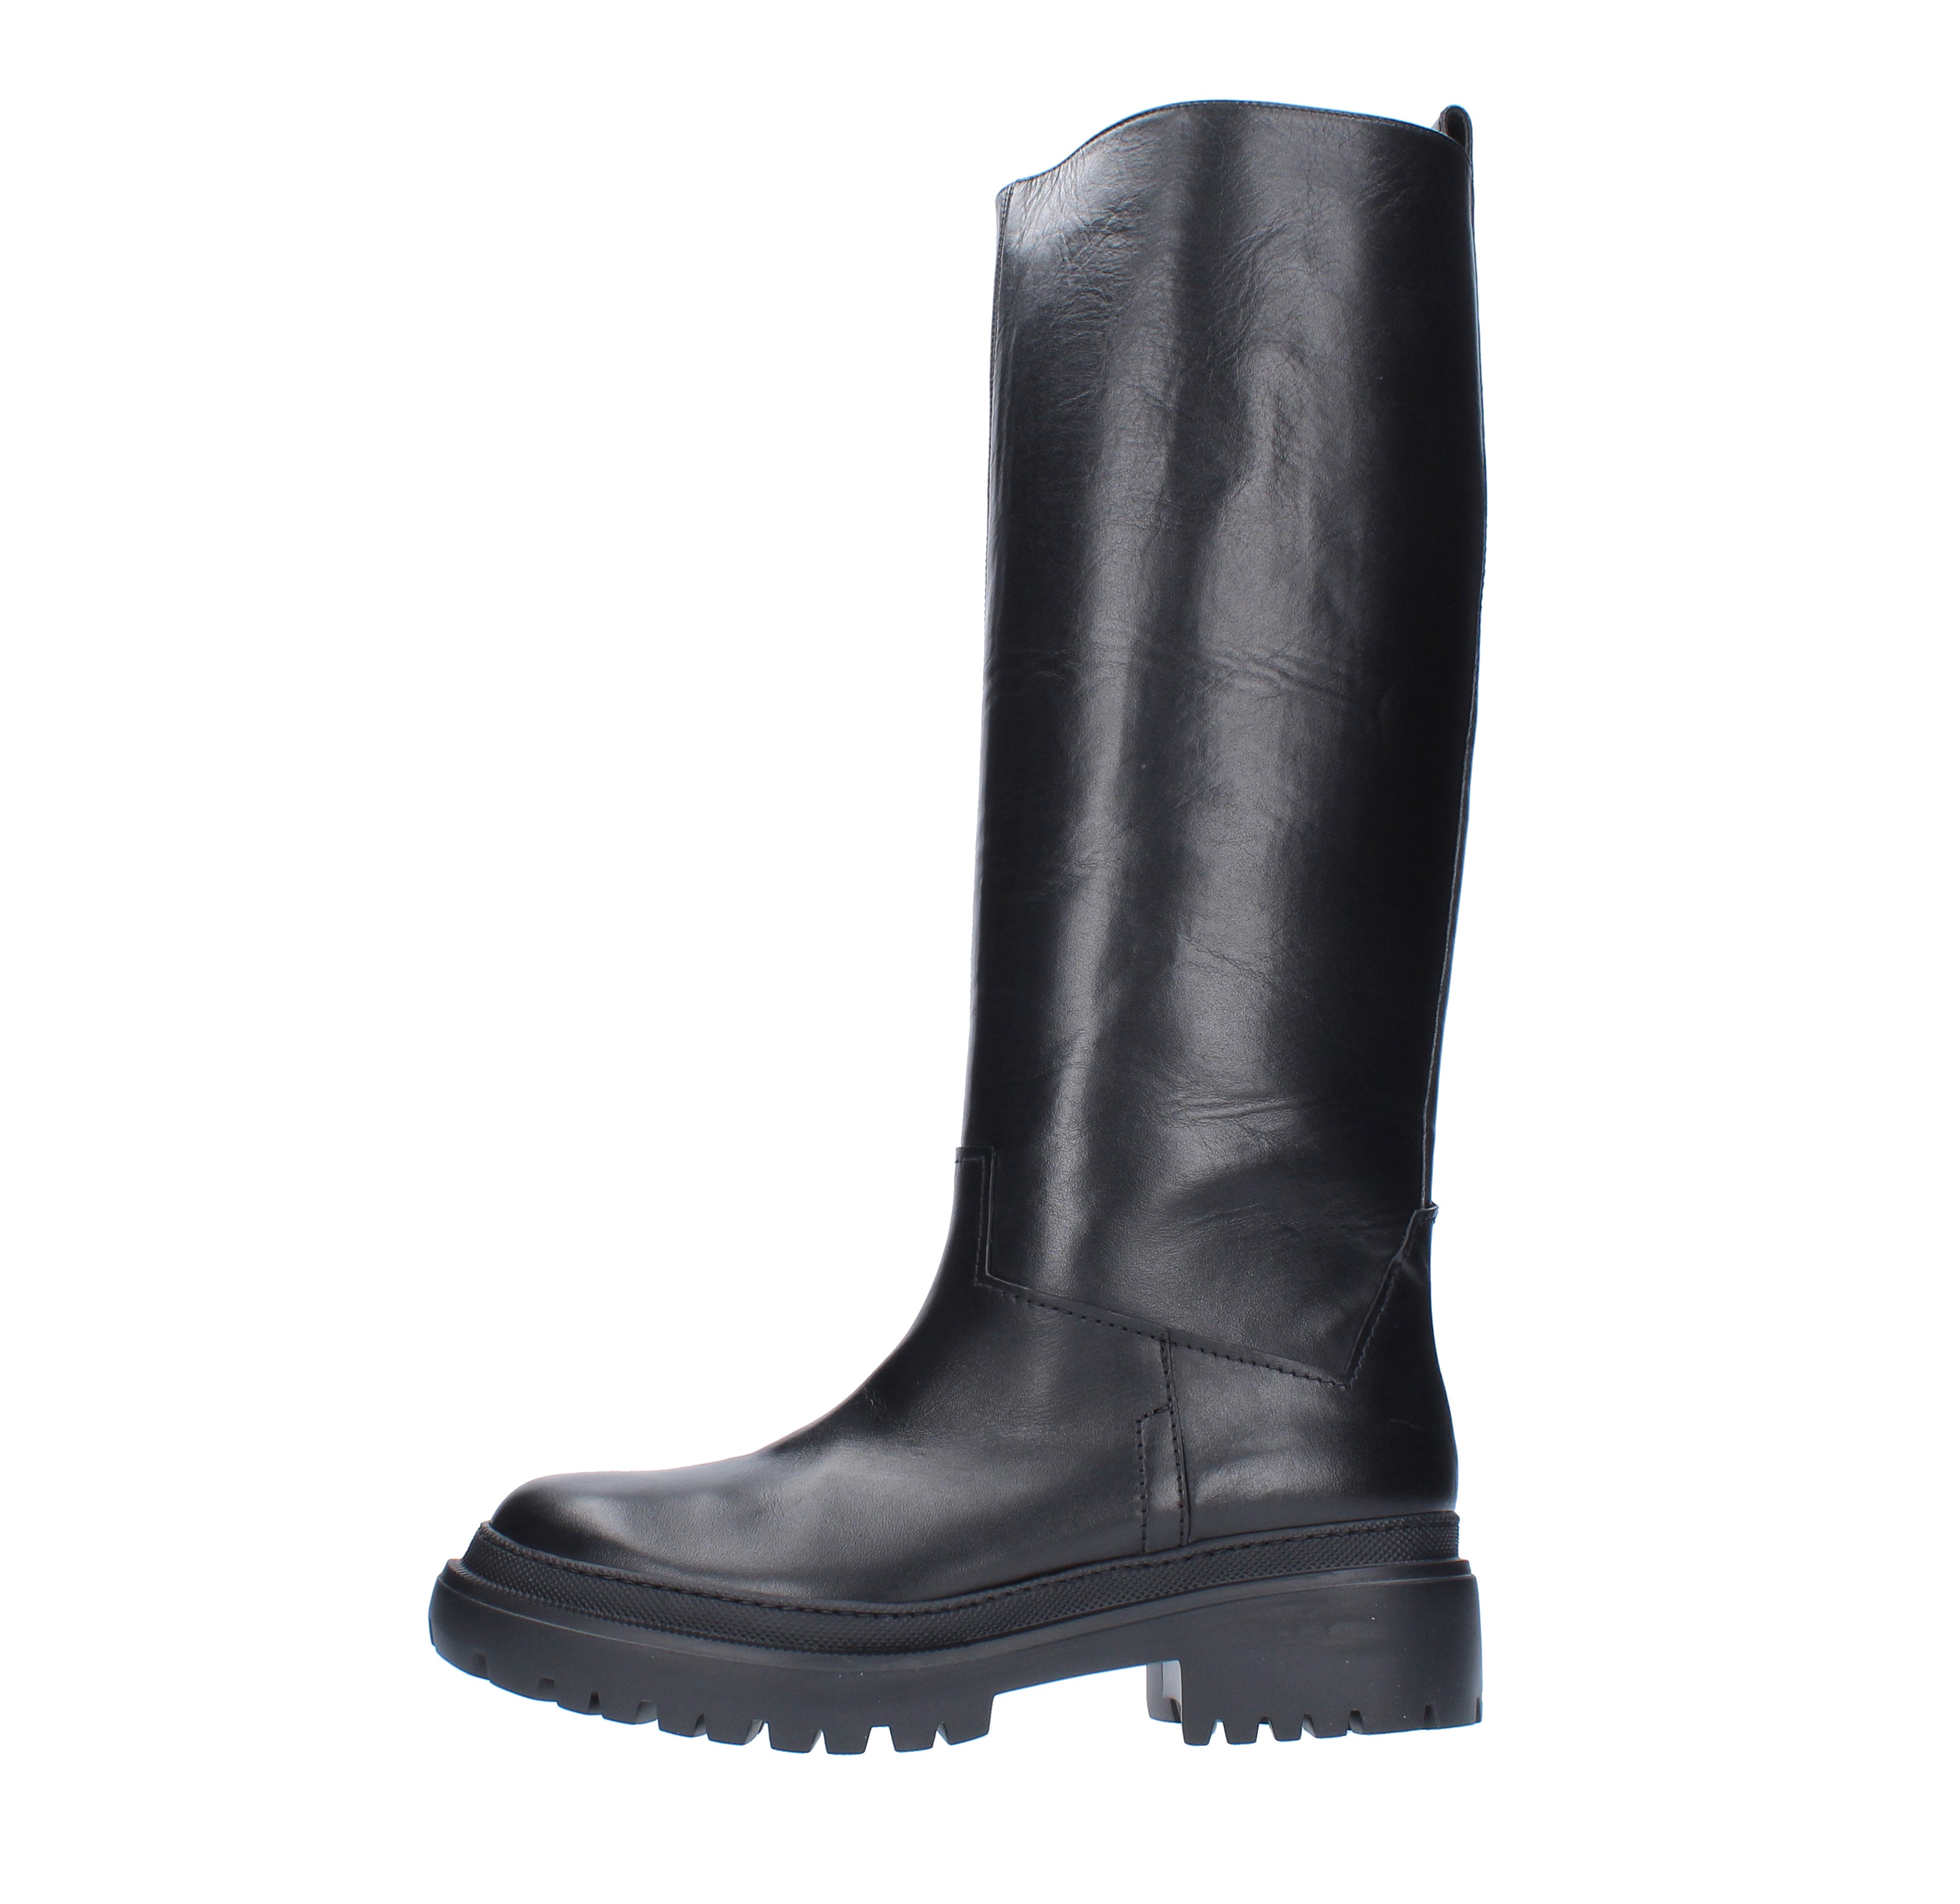 Boots model KS5506 in calfskin - KALLISTE' - Ginevra calzature